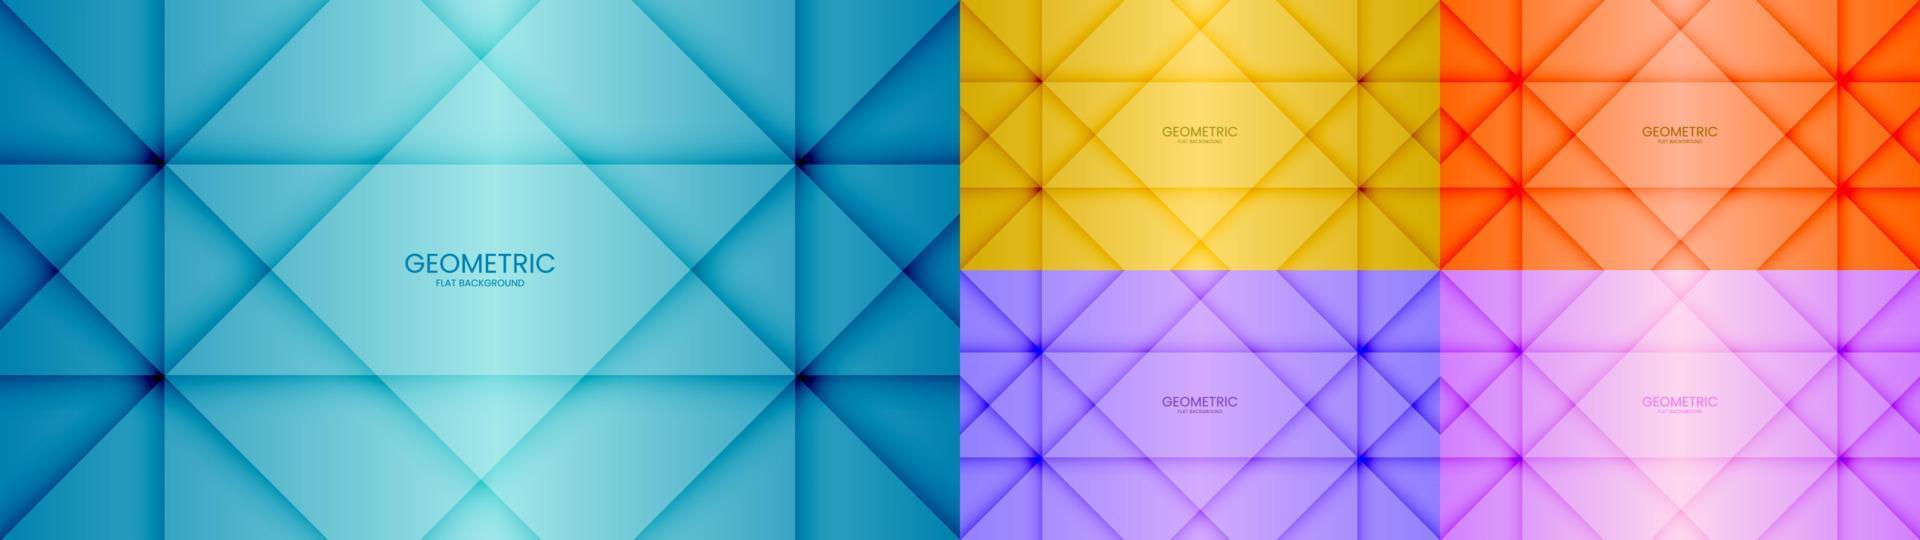 set van abstracte geometrische object blauw, geel, oranje, paars en roze kleur mooie achtergrond met lichte textuur. vector illustratie